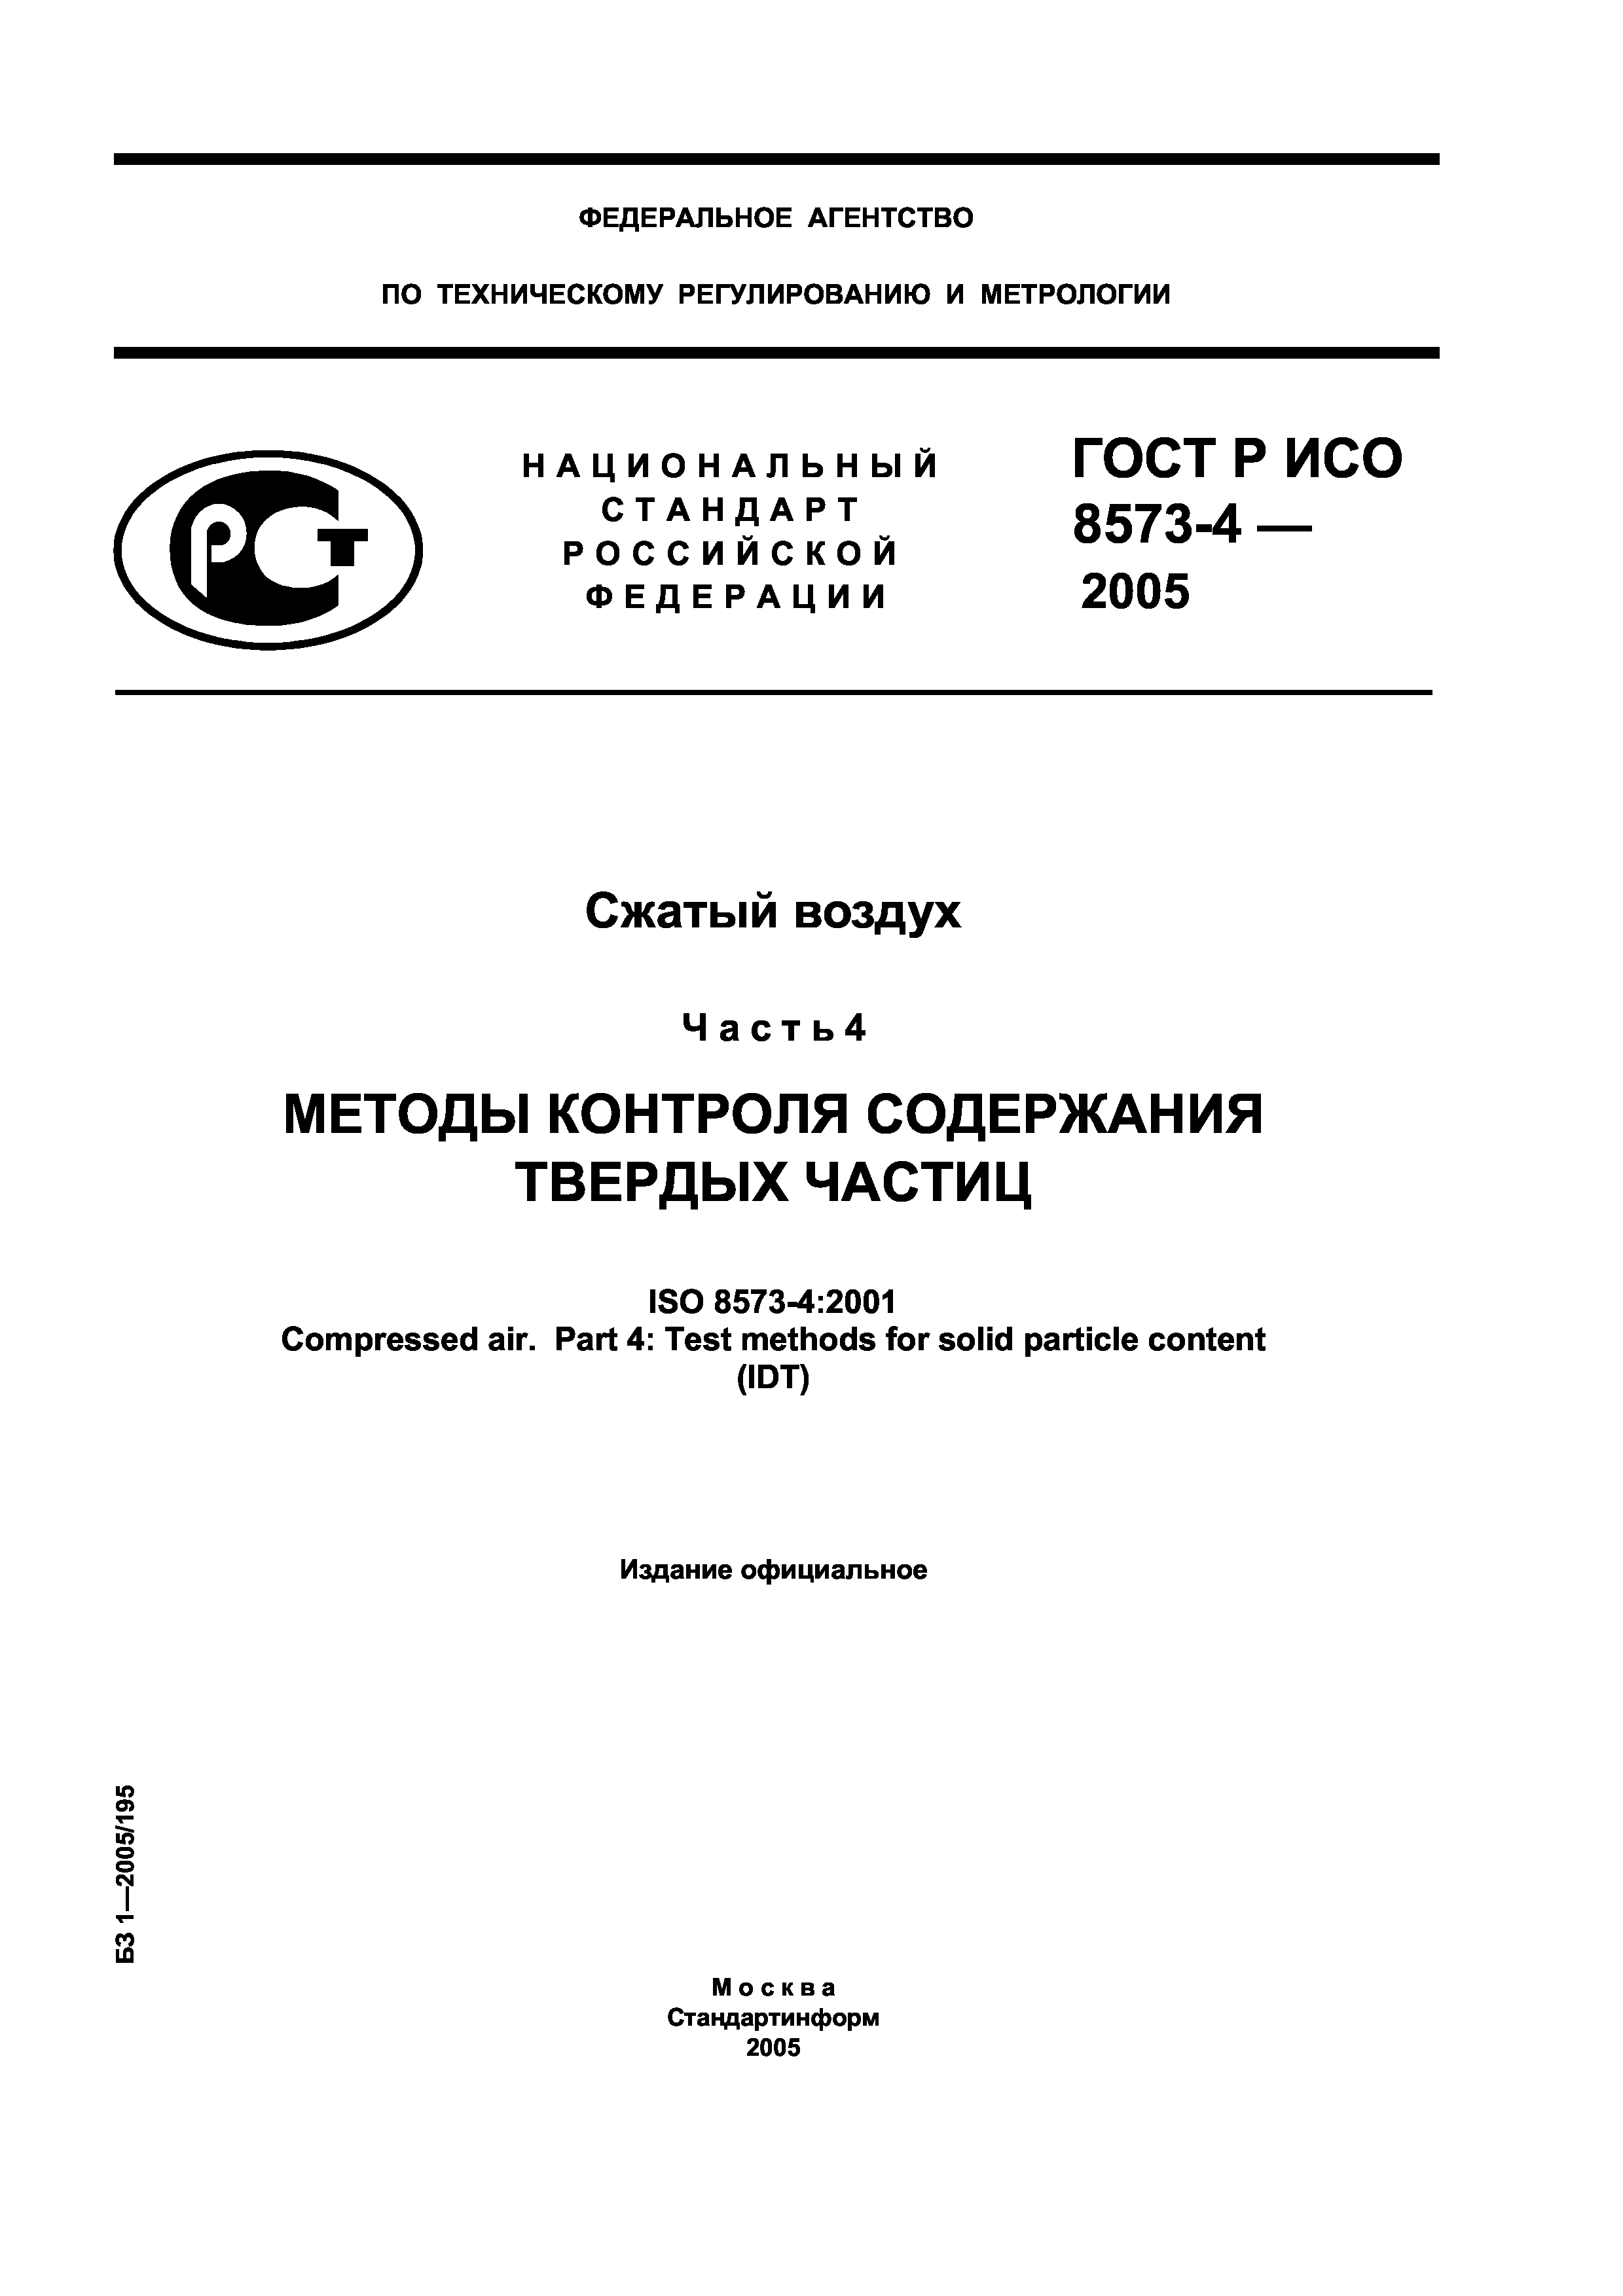 ГОСТ Р ИСО 8573-4-2005